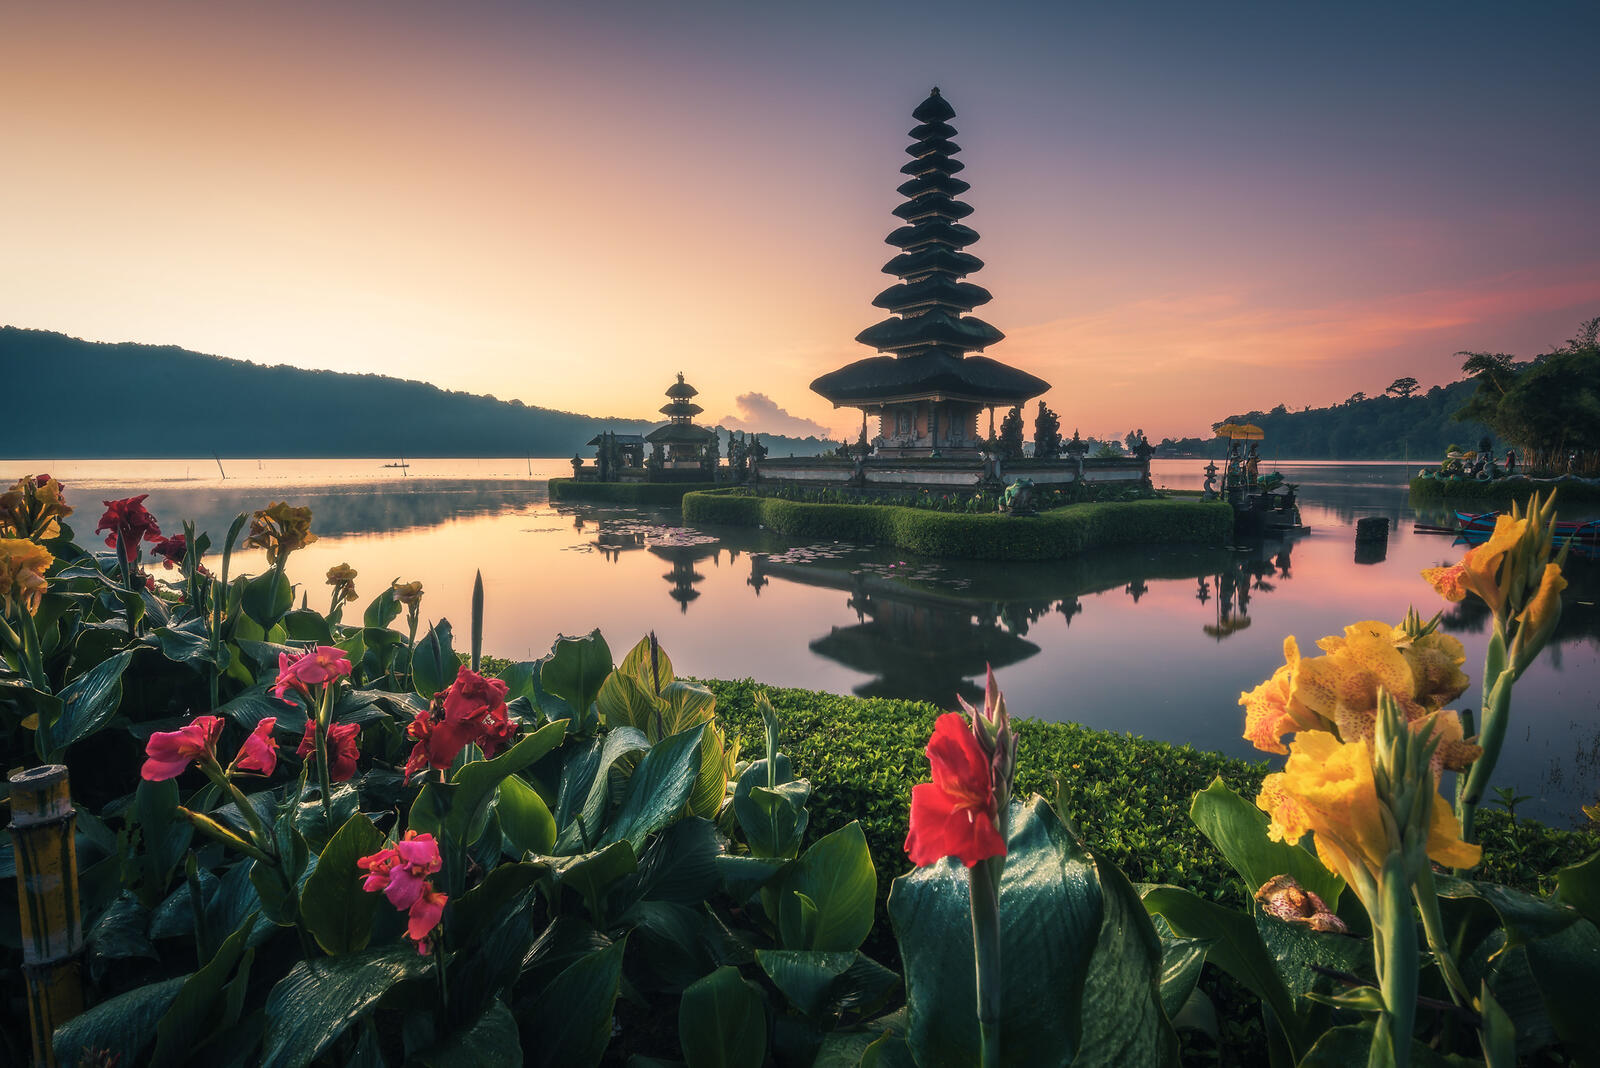 Wallpapers The island of Bali Indonesia Ulun Danu Temple on the desktop